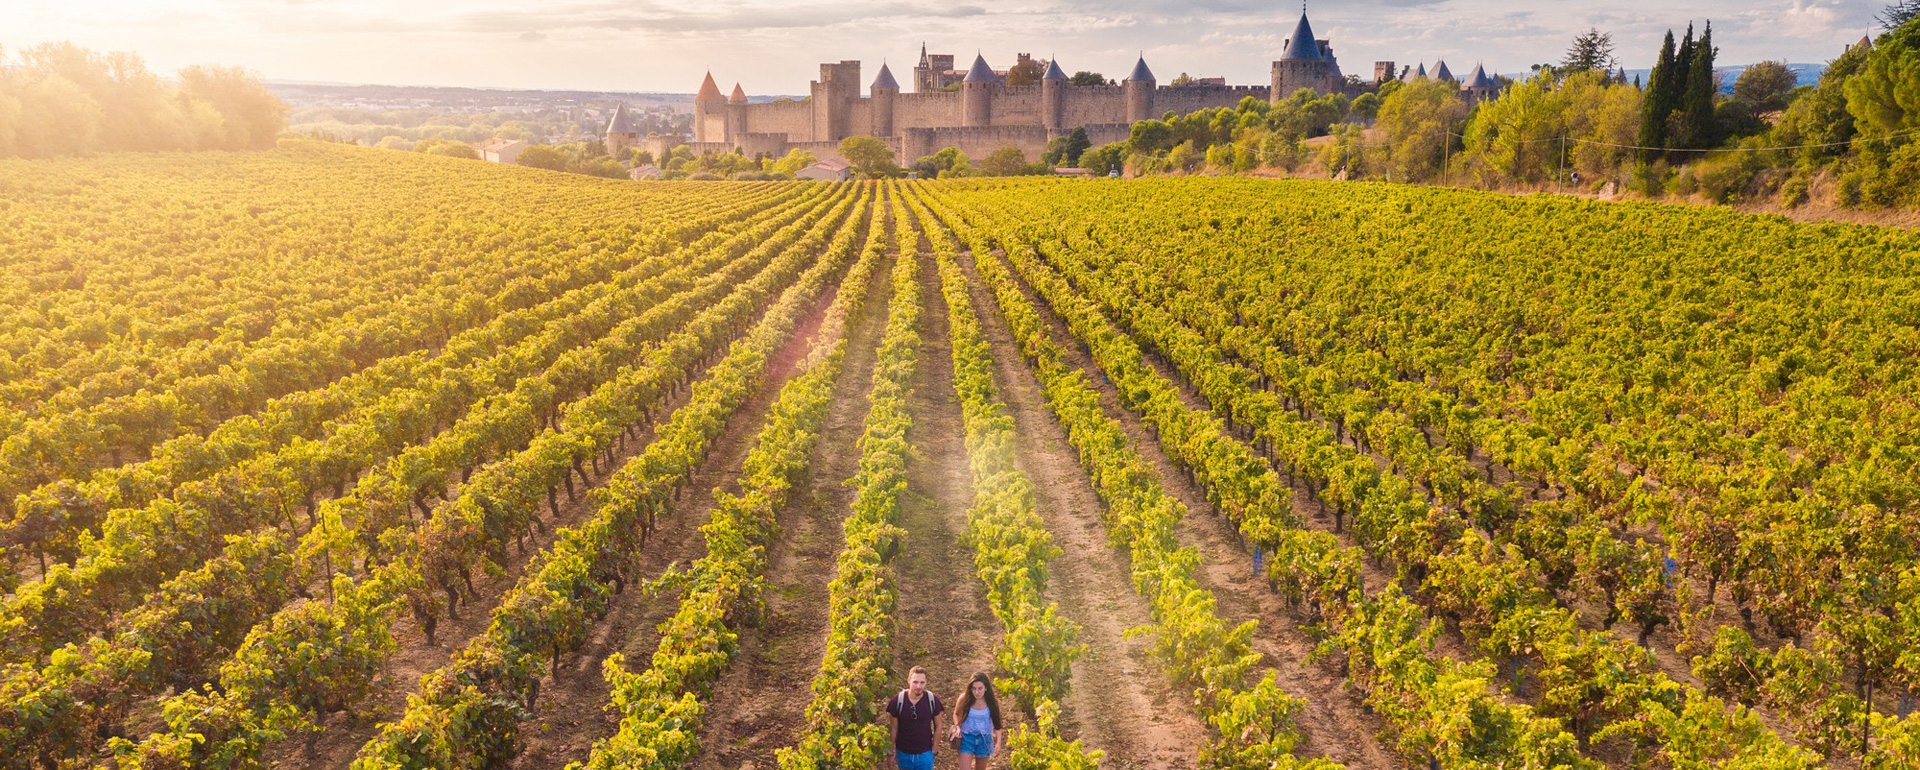 Vignobles autour de Carcassonne - Aude